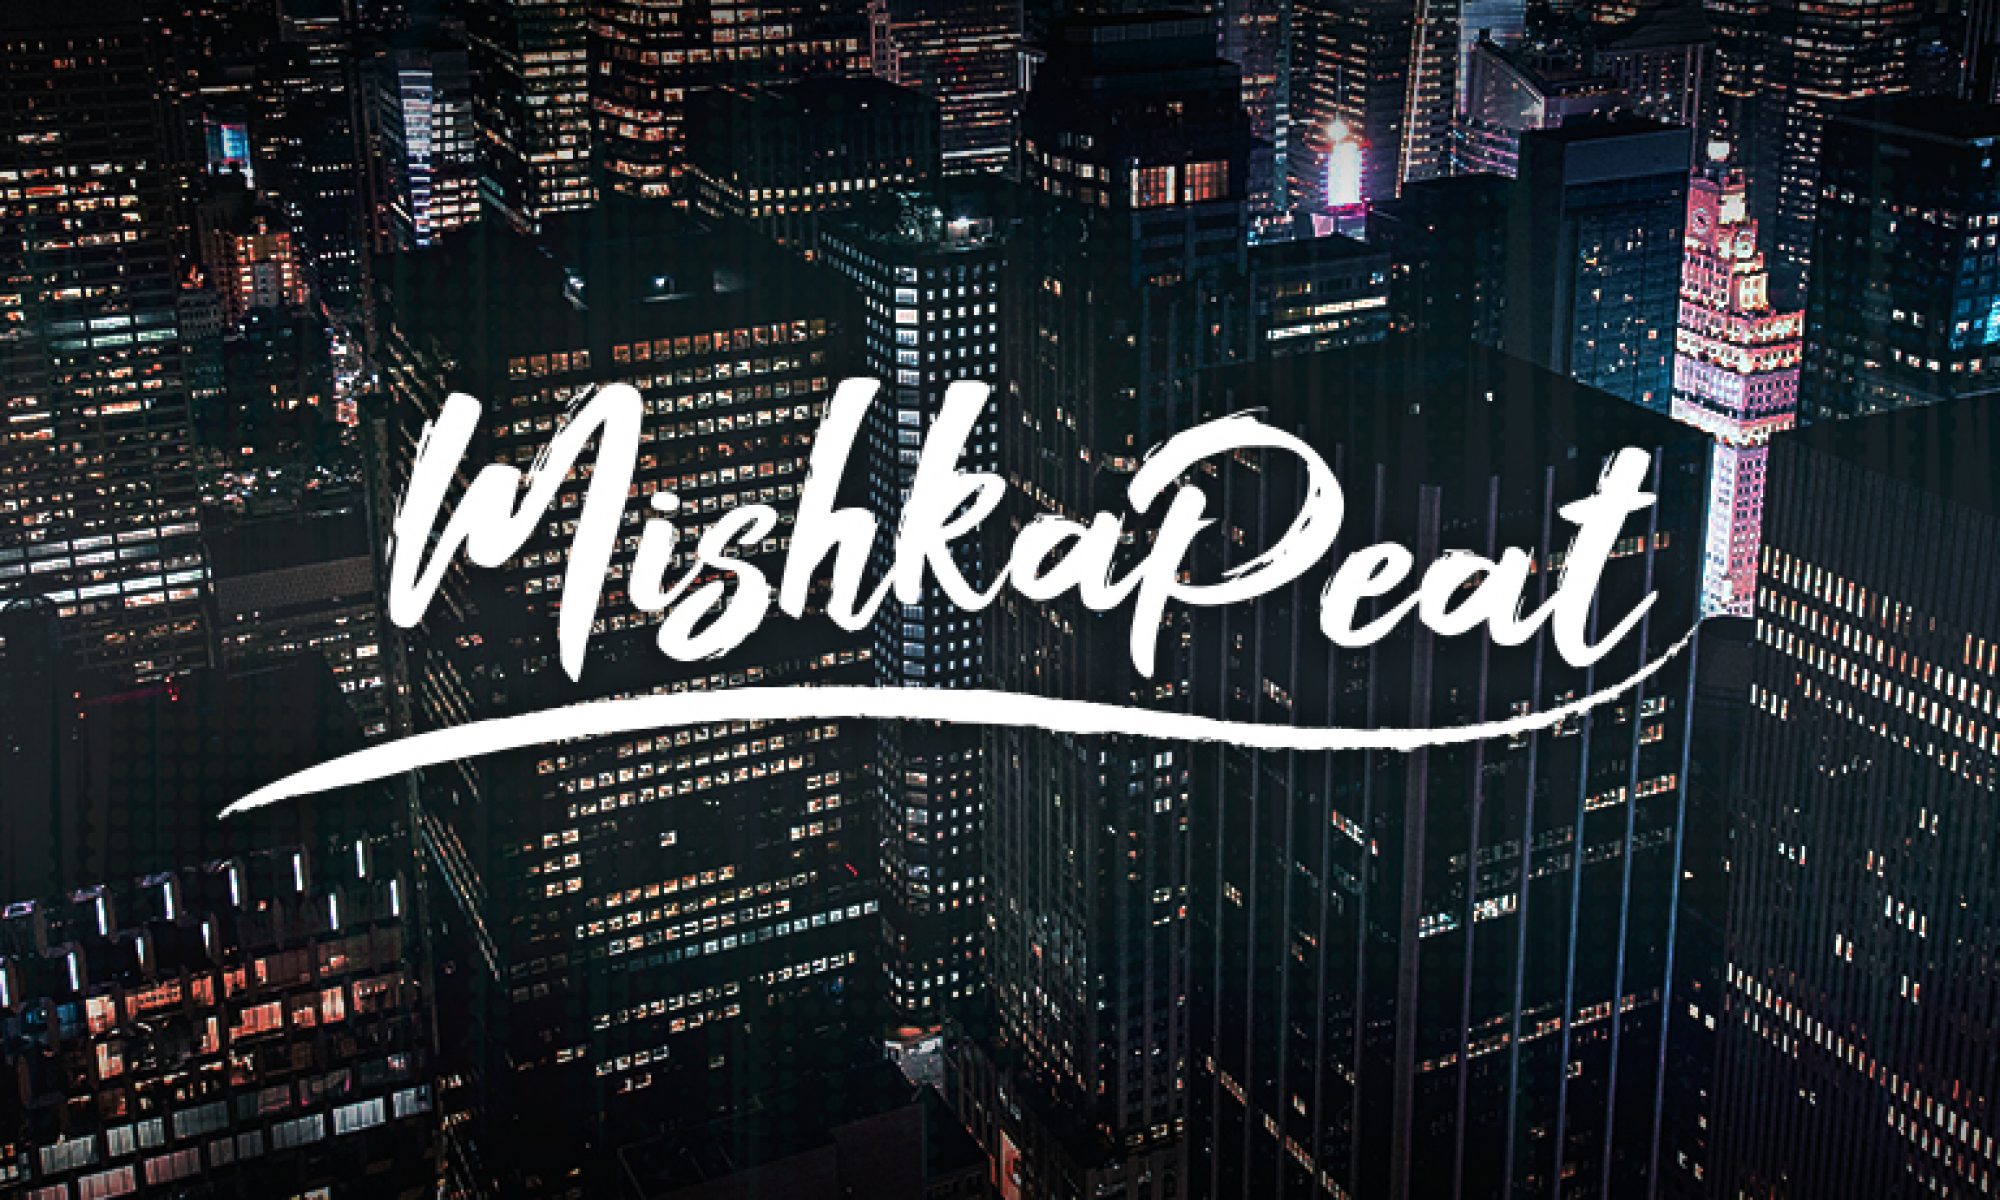 MISHKA PEAT